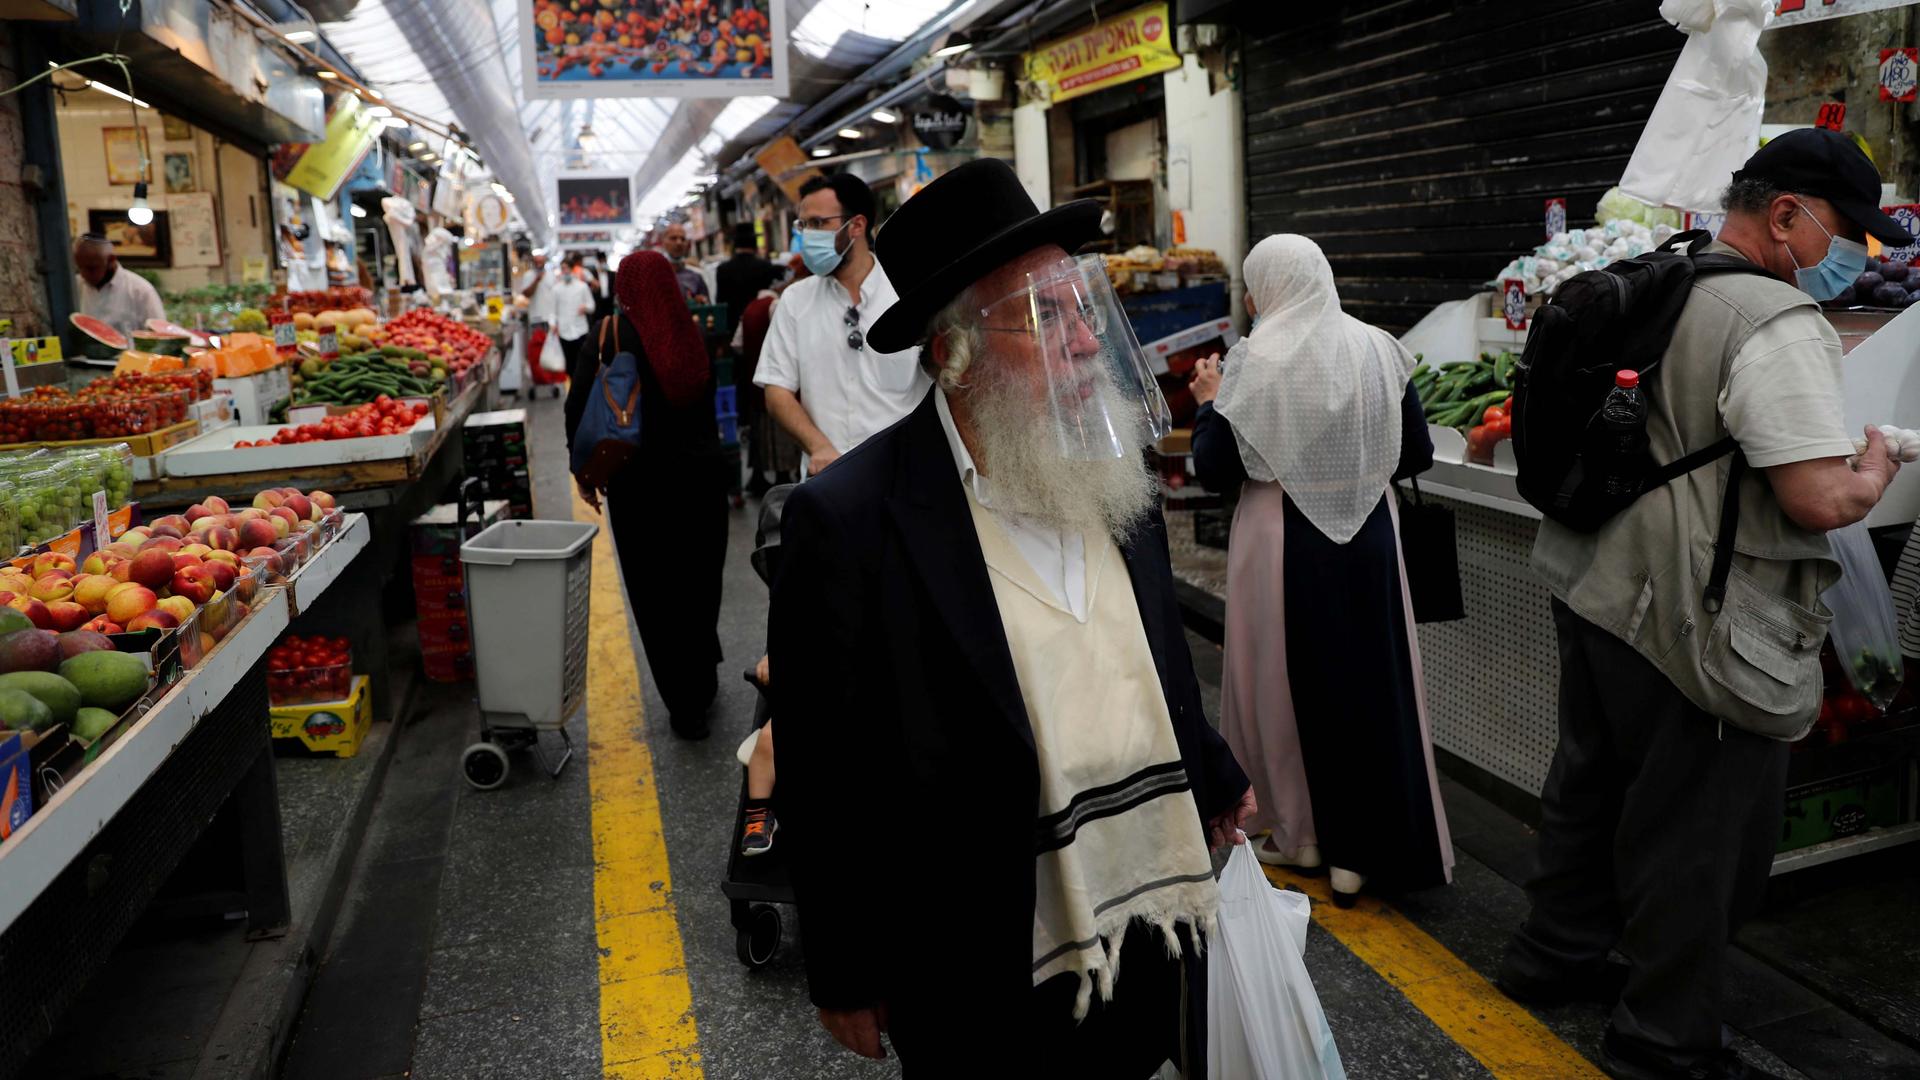 People wear face masks as they shop in a main market in Jerusalem, Israel, July 16, 2020.